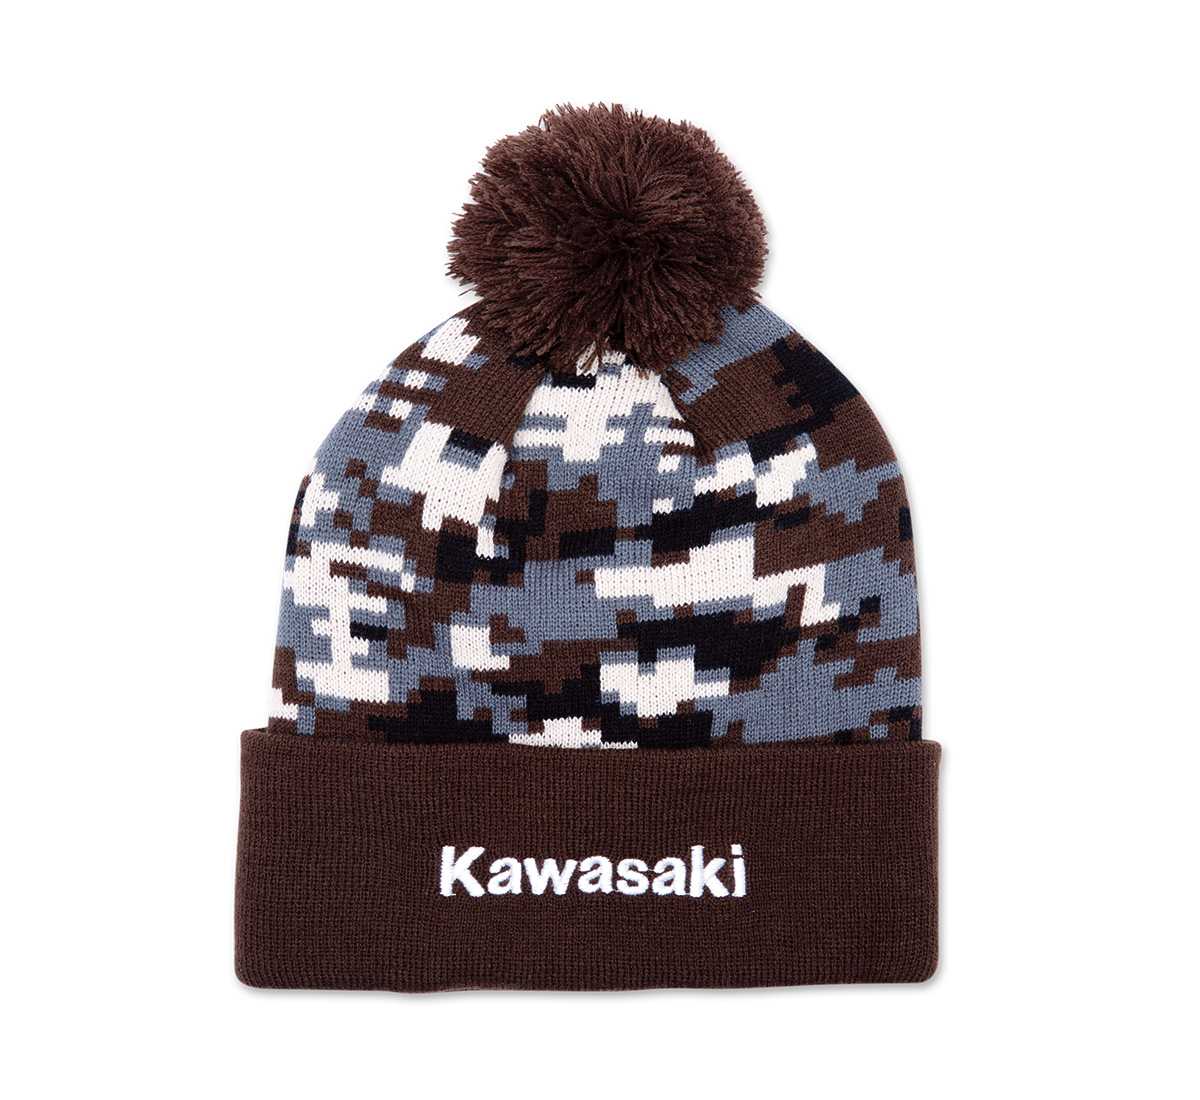 Official Kawasaki Apparel | Shop Now